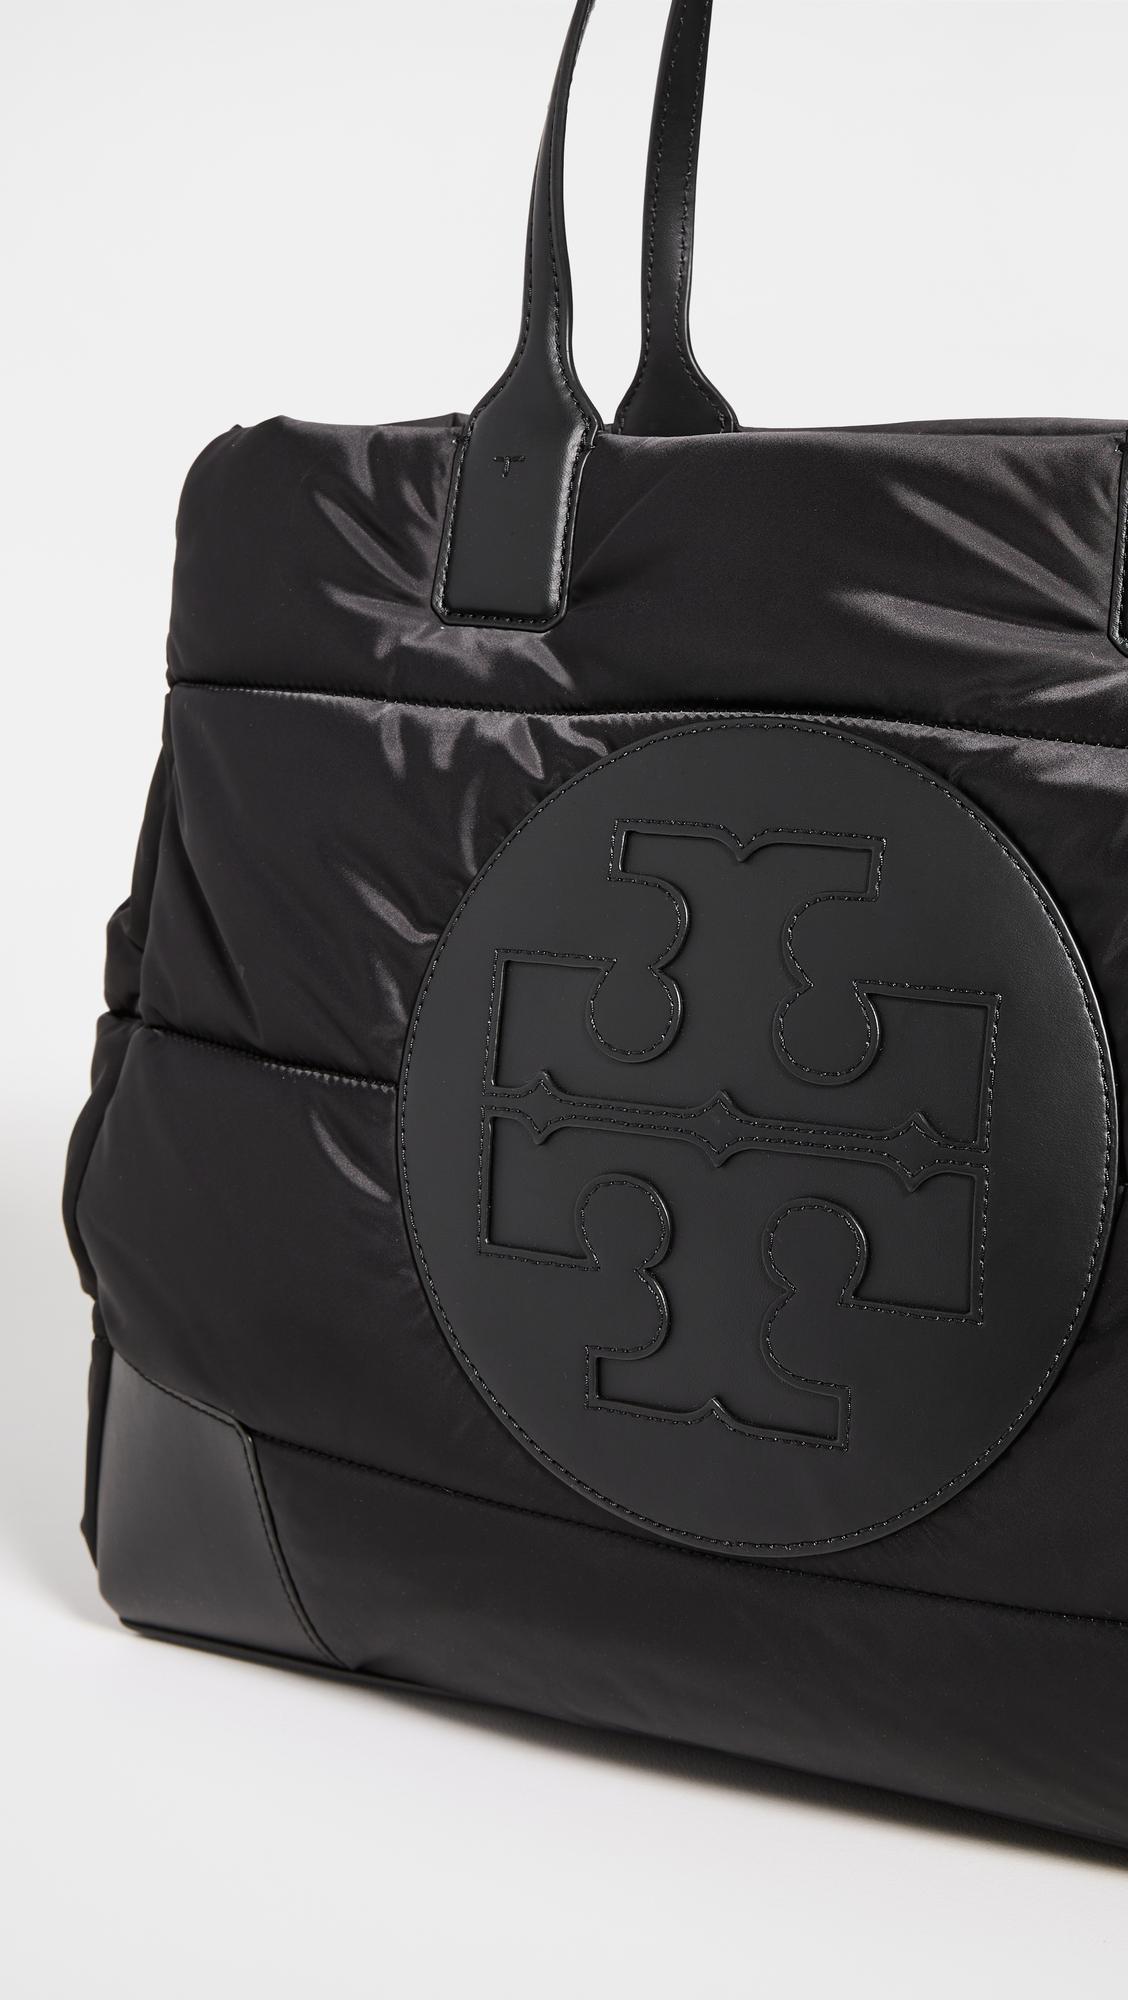 Tory Burch Leather 'ella' Hand Bag in Grey (Black) - Save 58% | Lyst